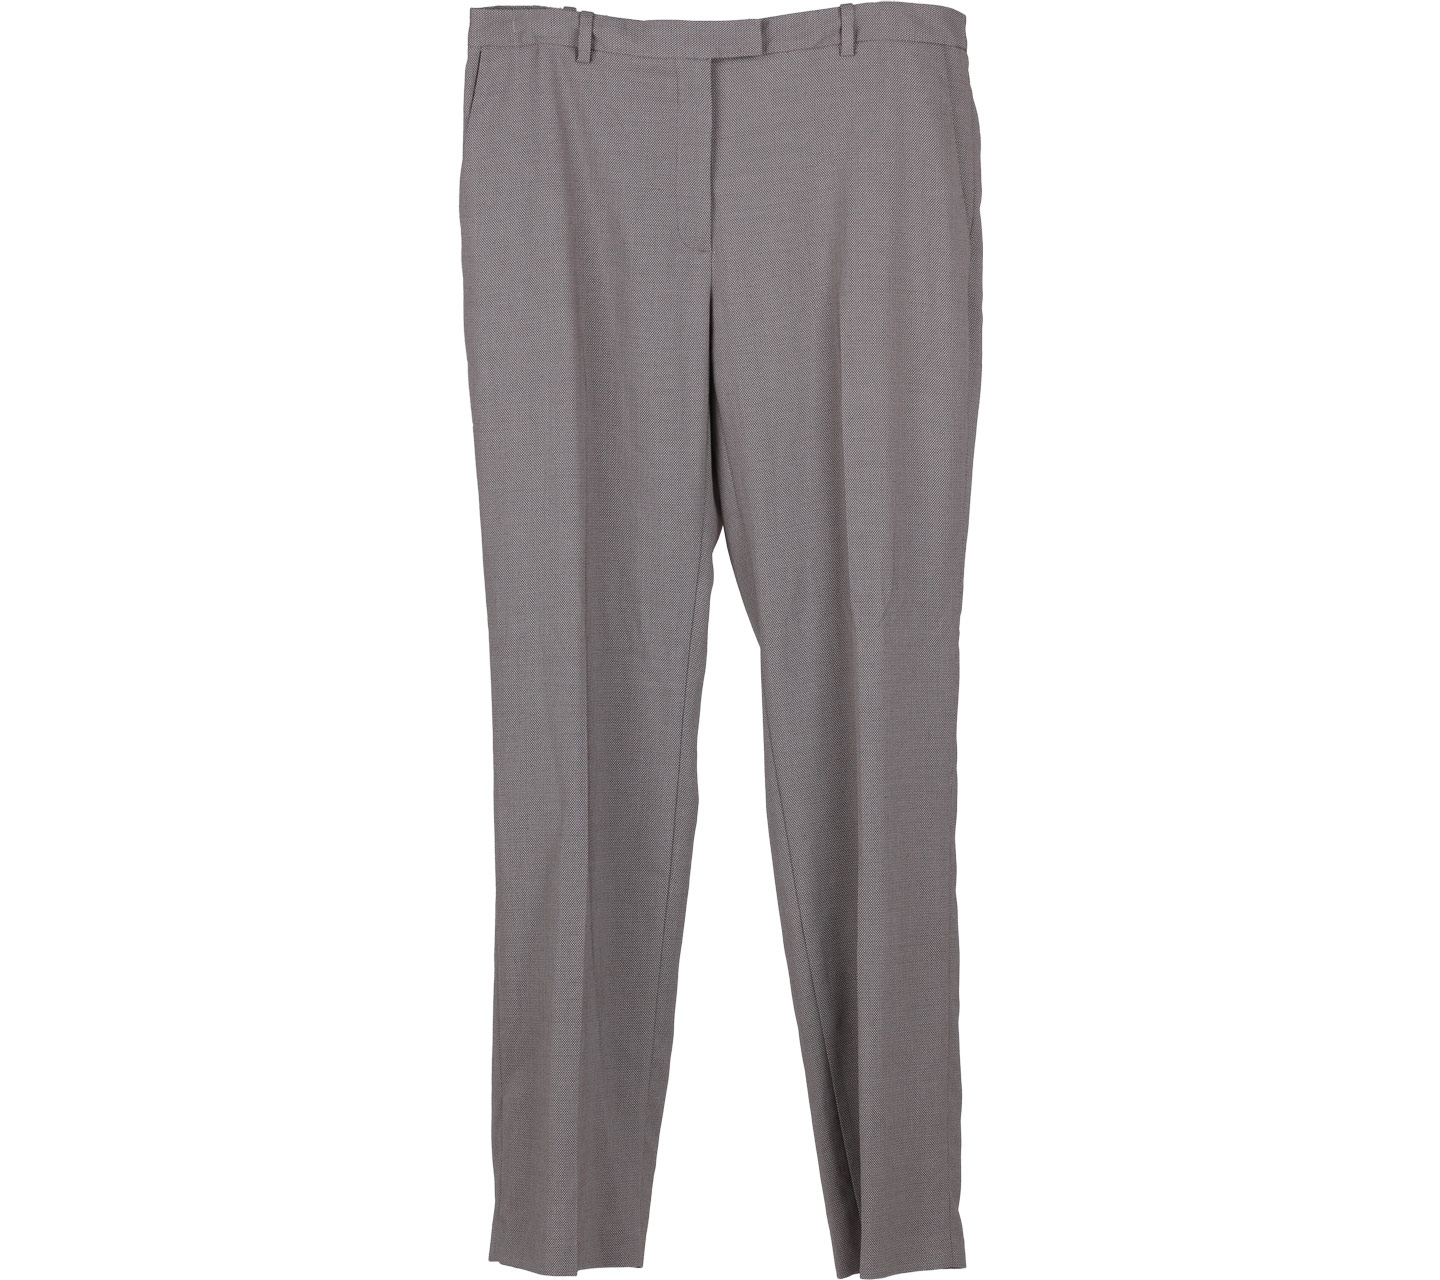 Zara Grey Patterned Pants